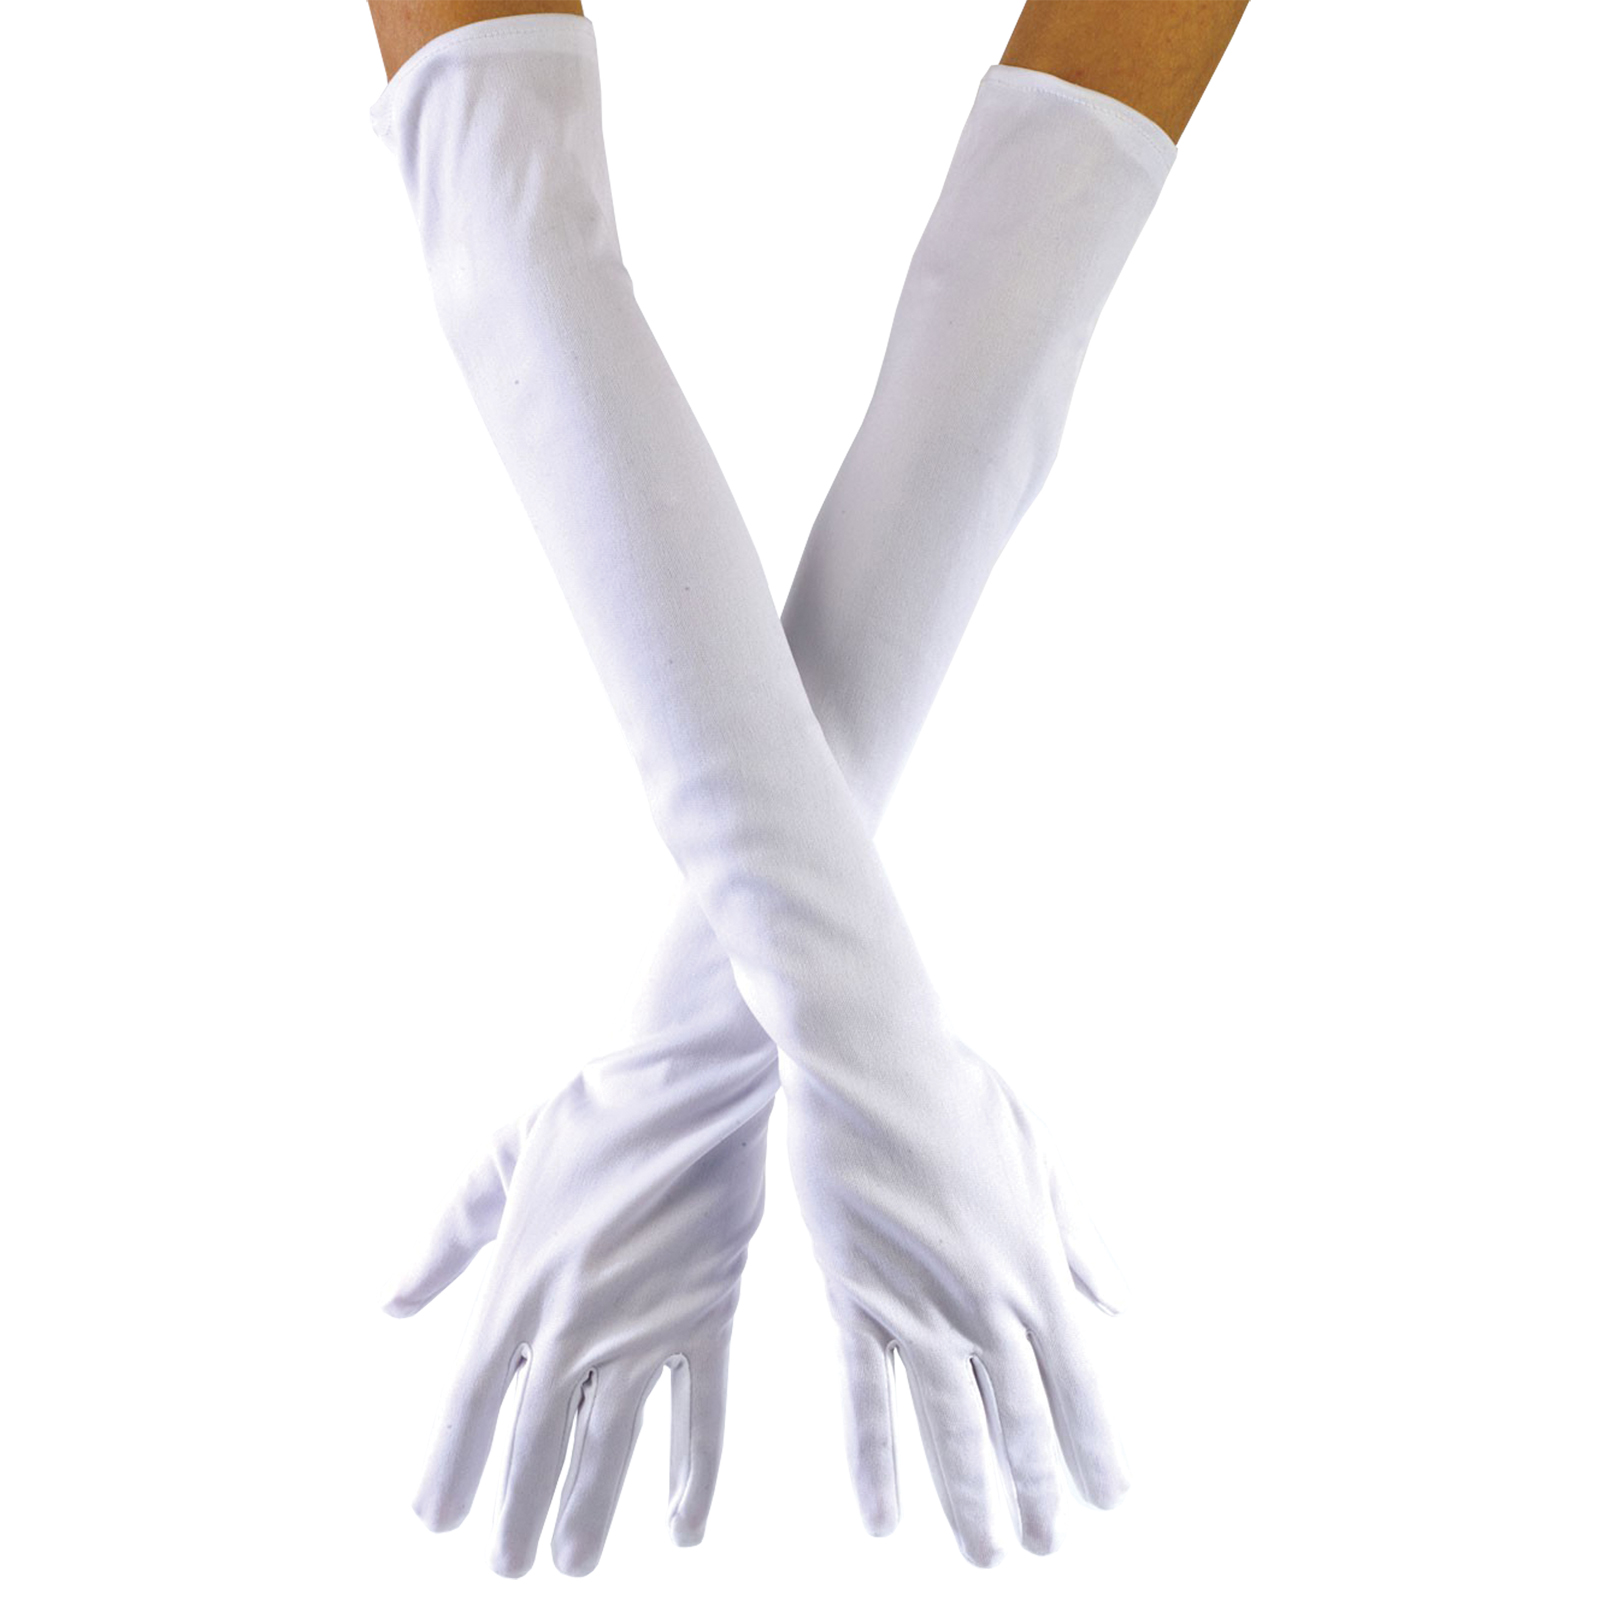 Gloves Child White Opera 15in Costume Accessory